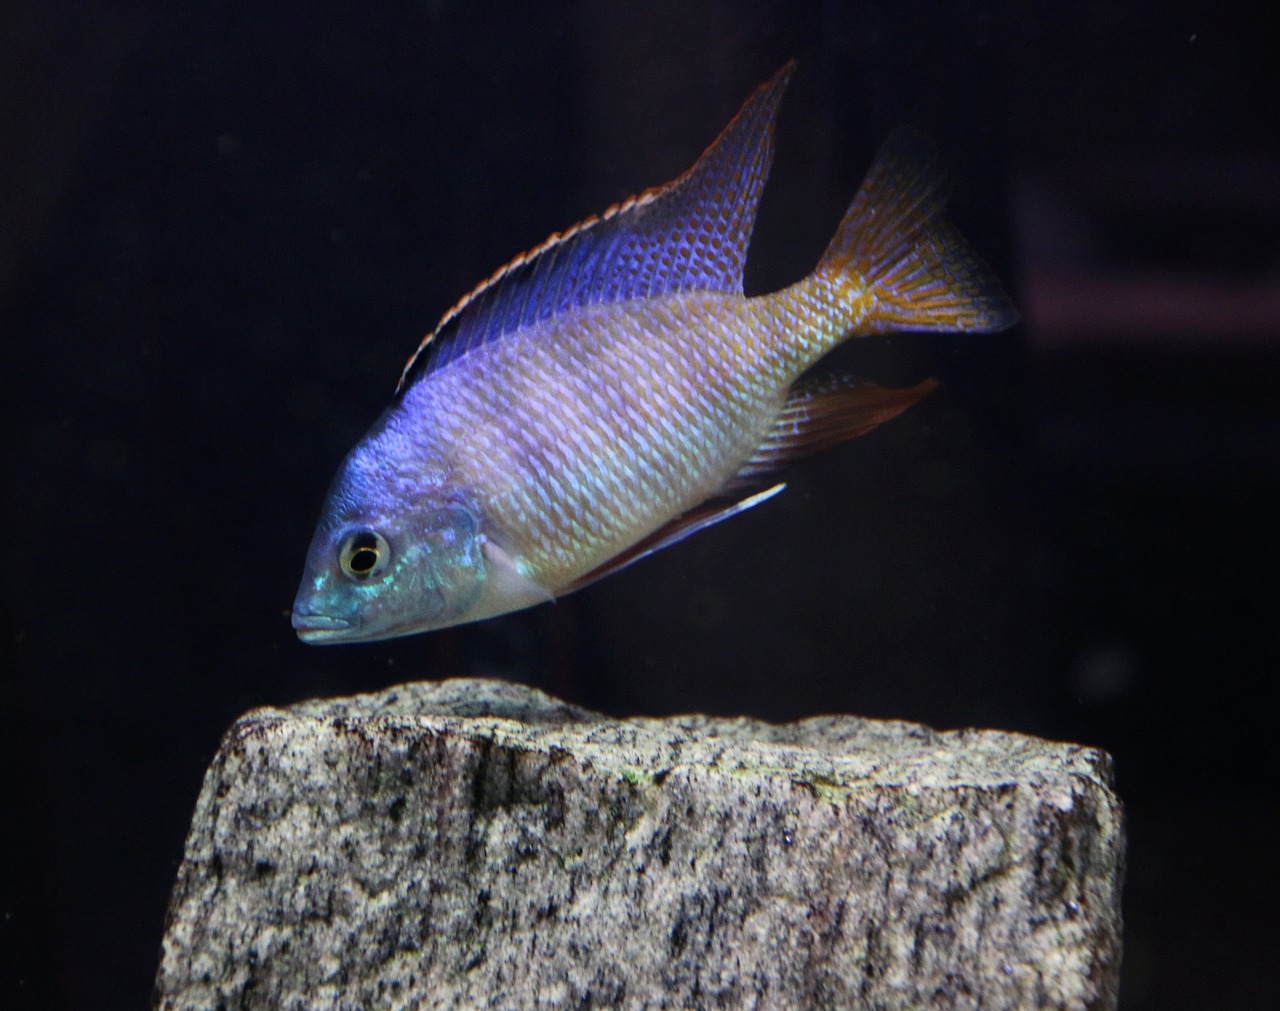 pseudotropheus saulosi fish aquarium free photo